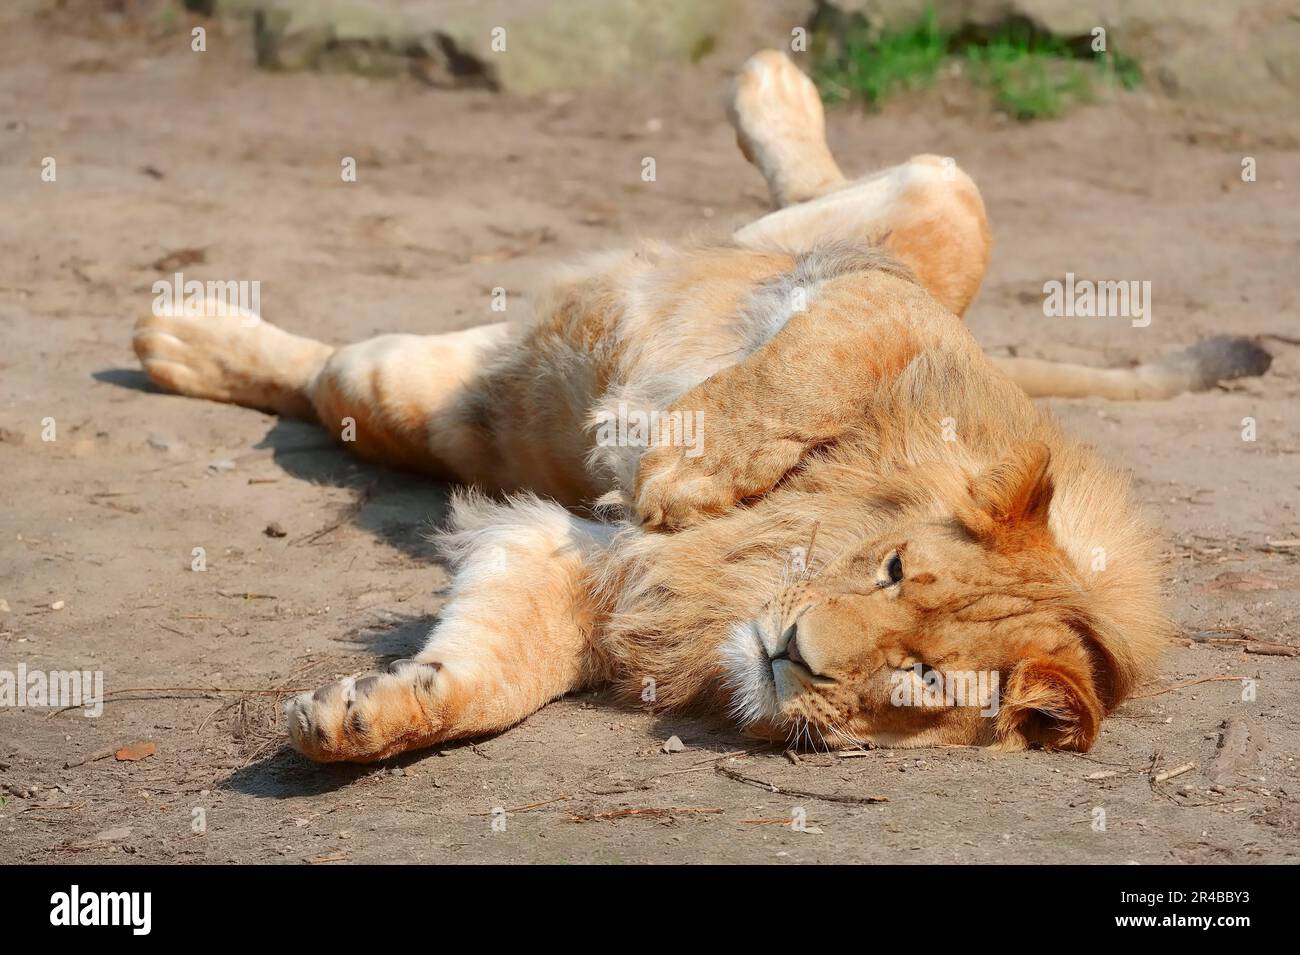 Lion africain (Panthera leo), lion nian mâle Banque D'Images